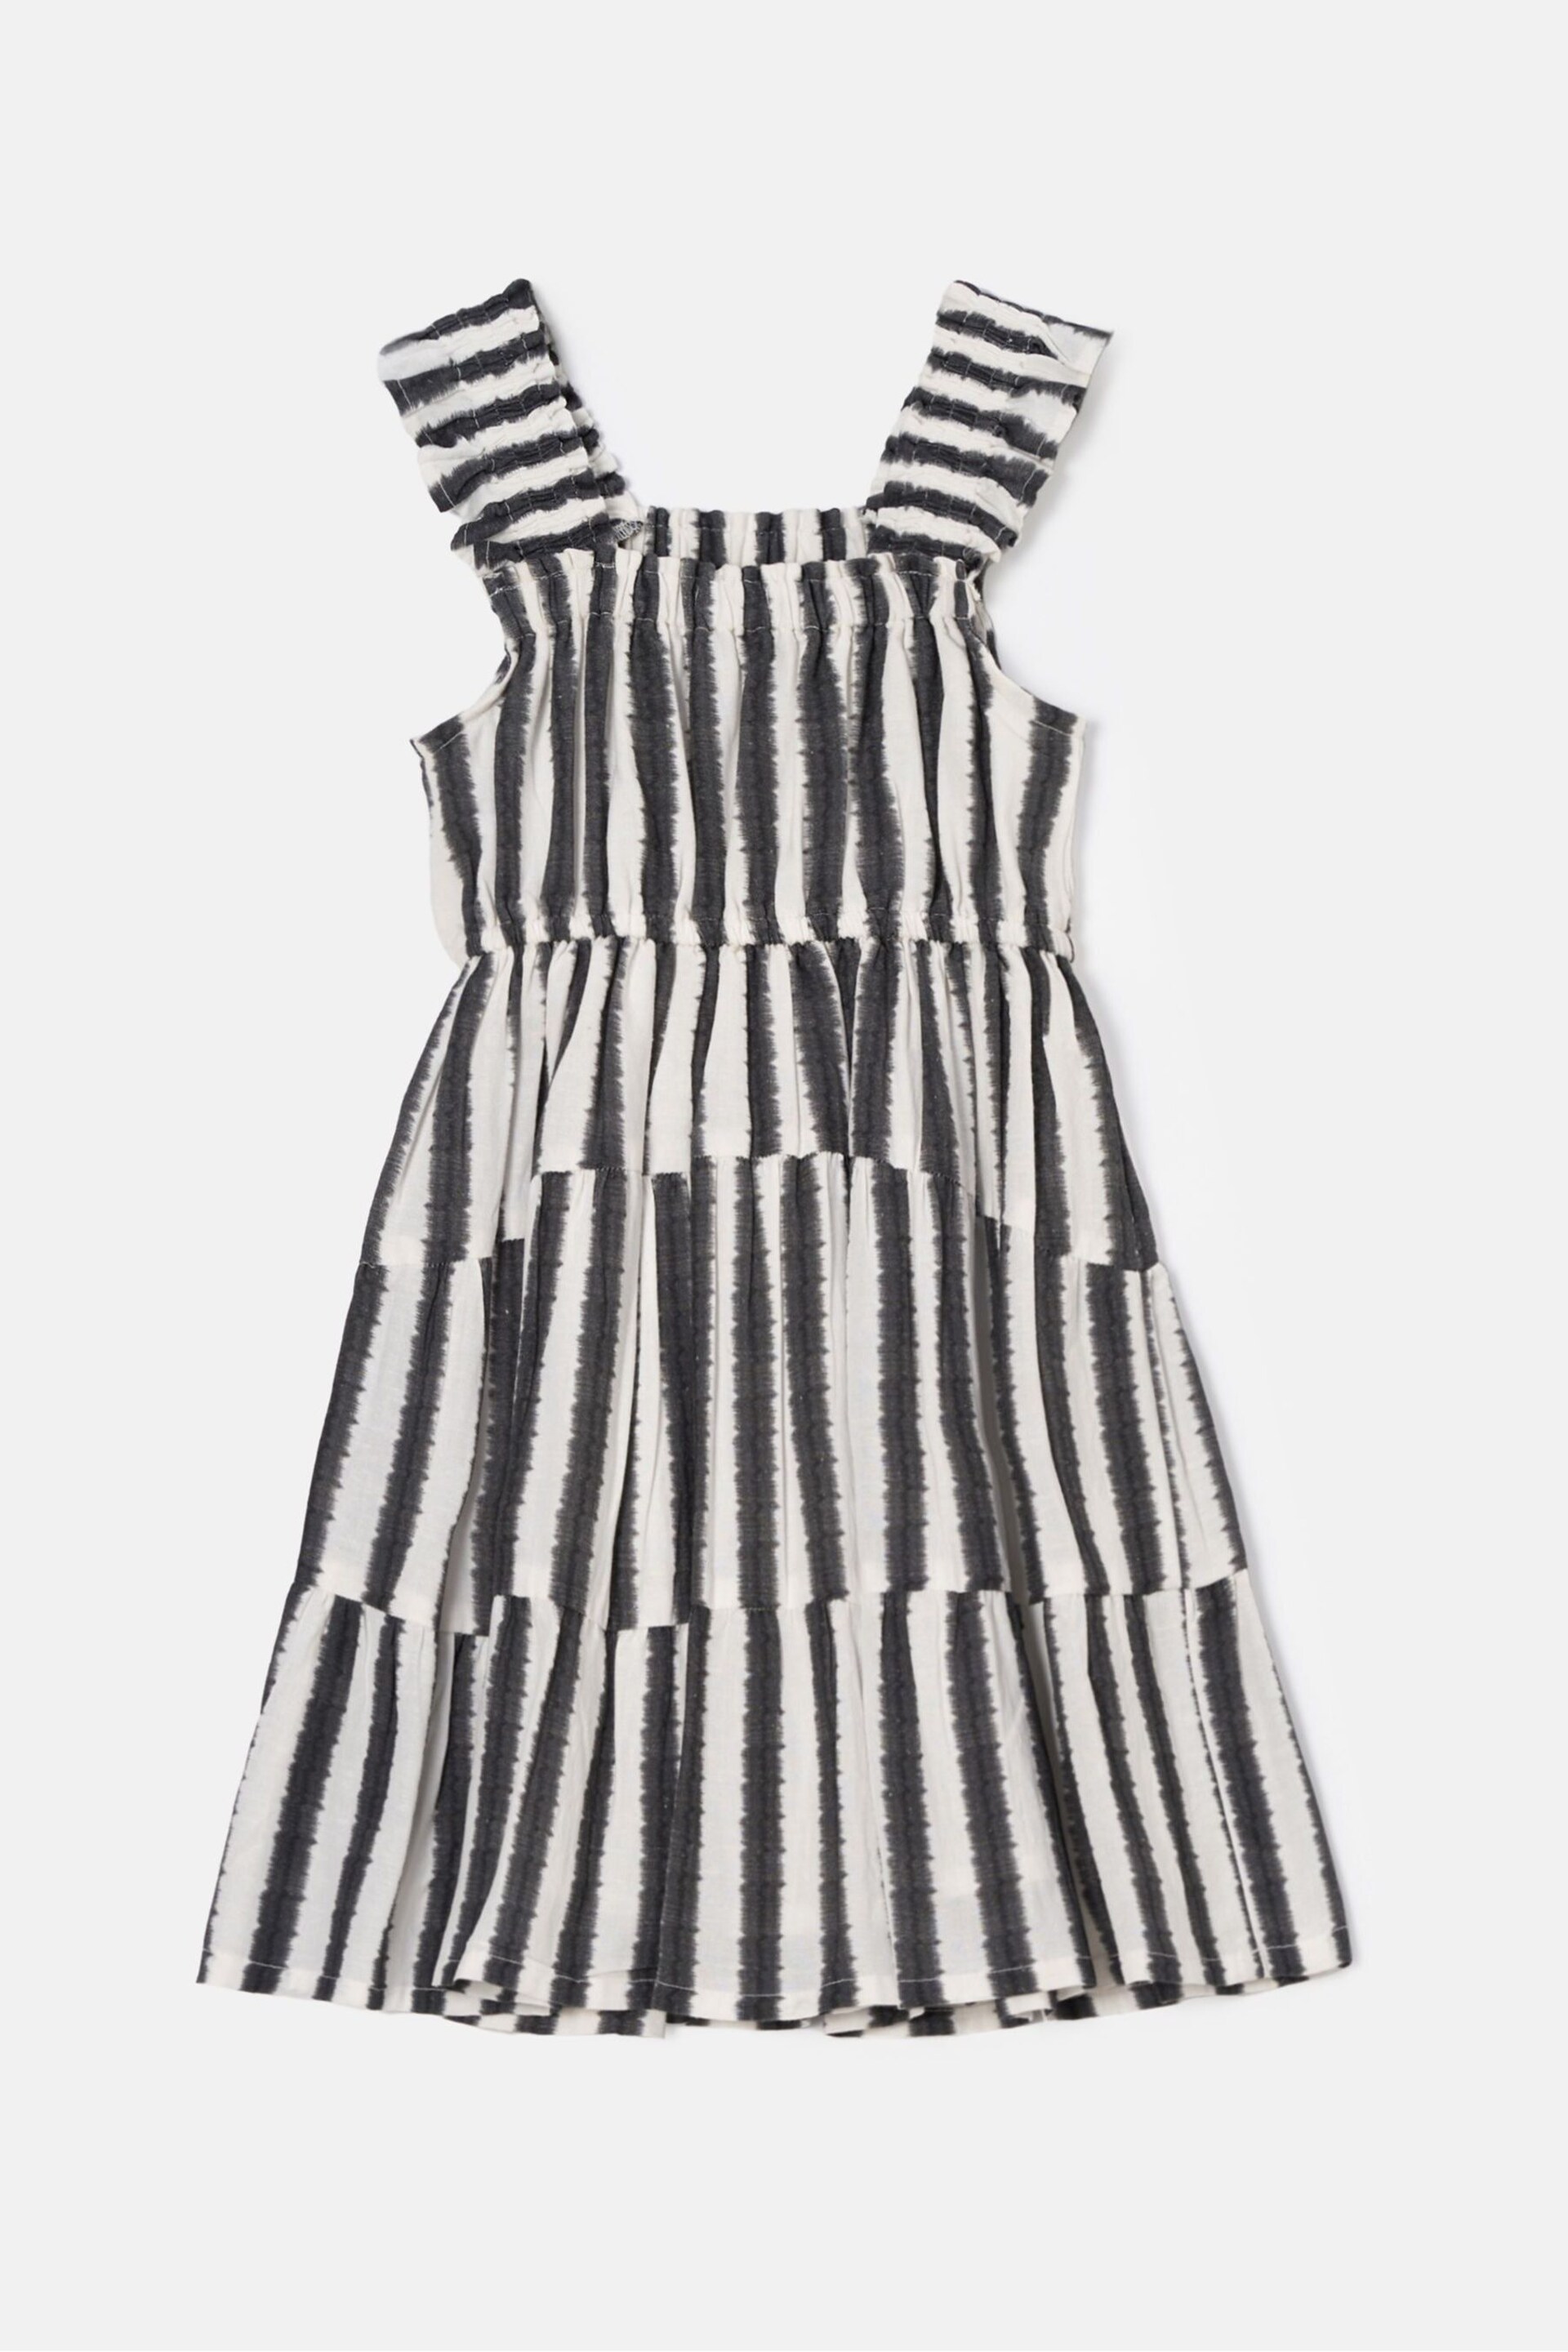 Angel & Rocket Black Stripe Etta Summer Dress - Image 4 of 5